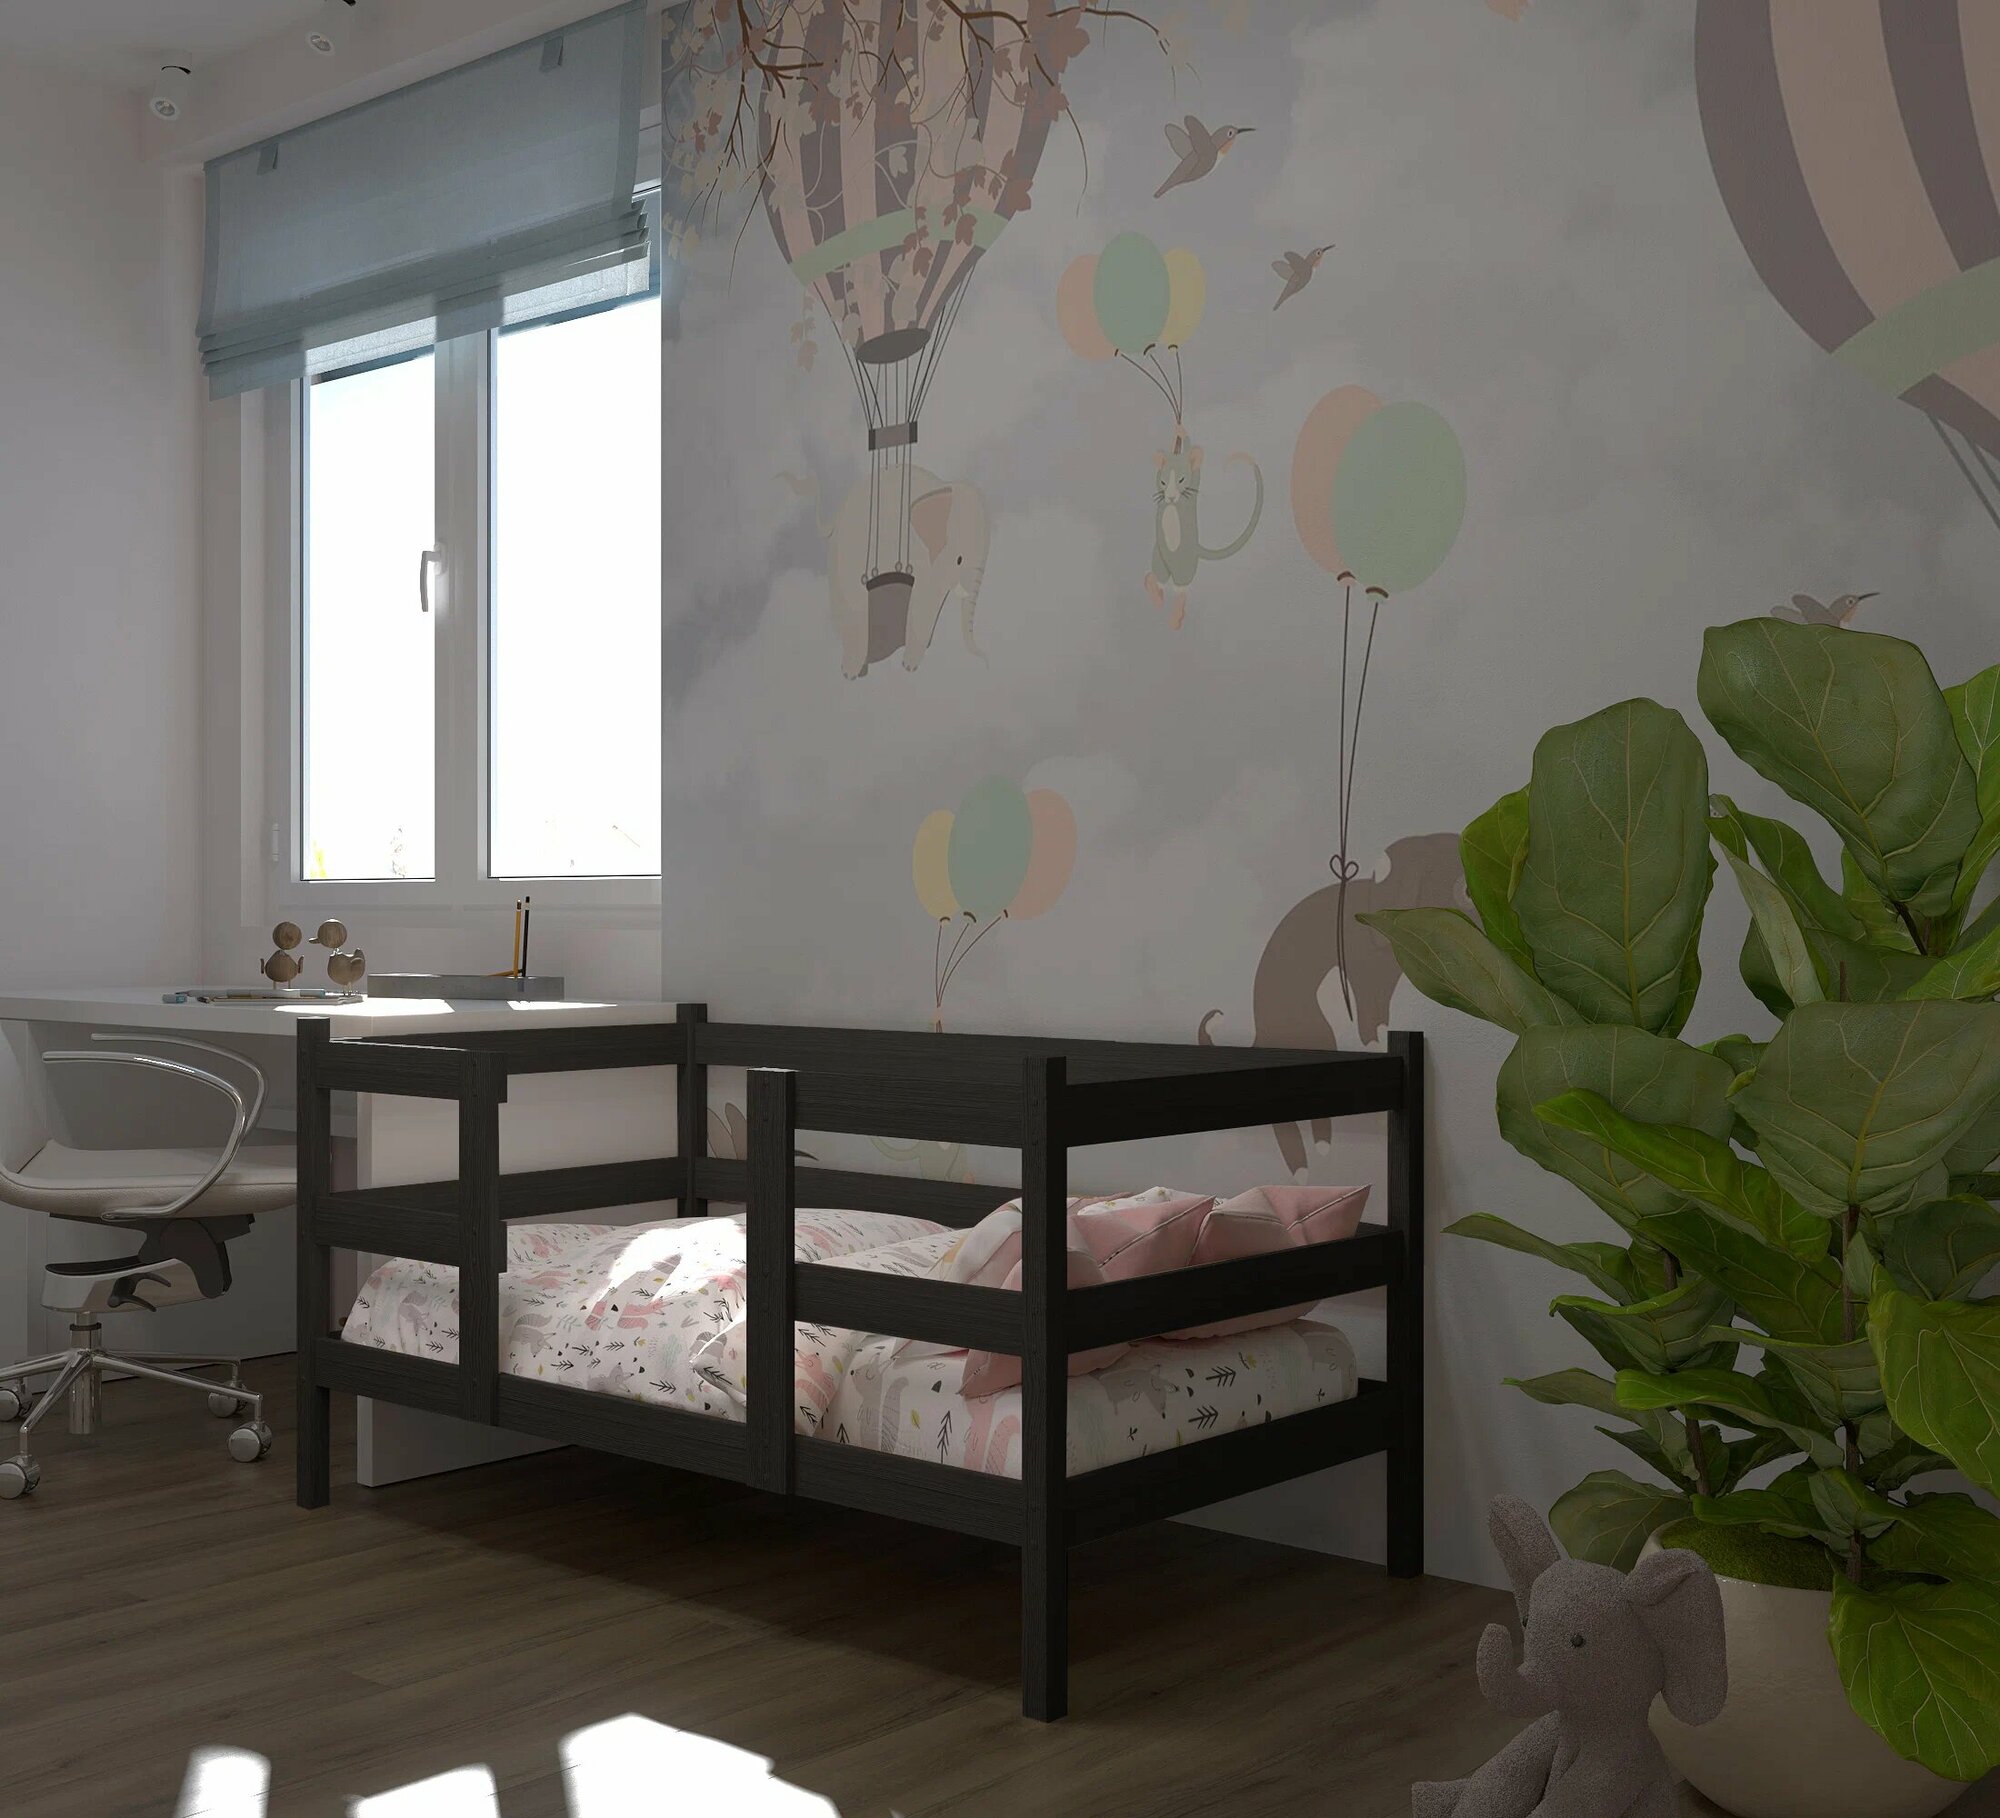 Кровать детская, подростковая "Кроха", спальное место 180х90, масло "Графит", из массива